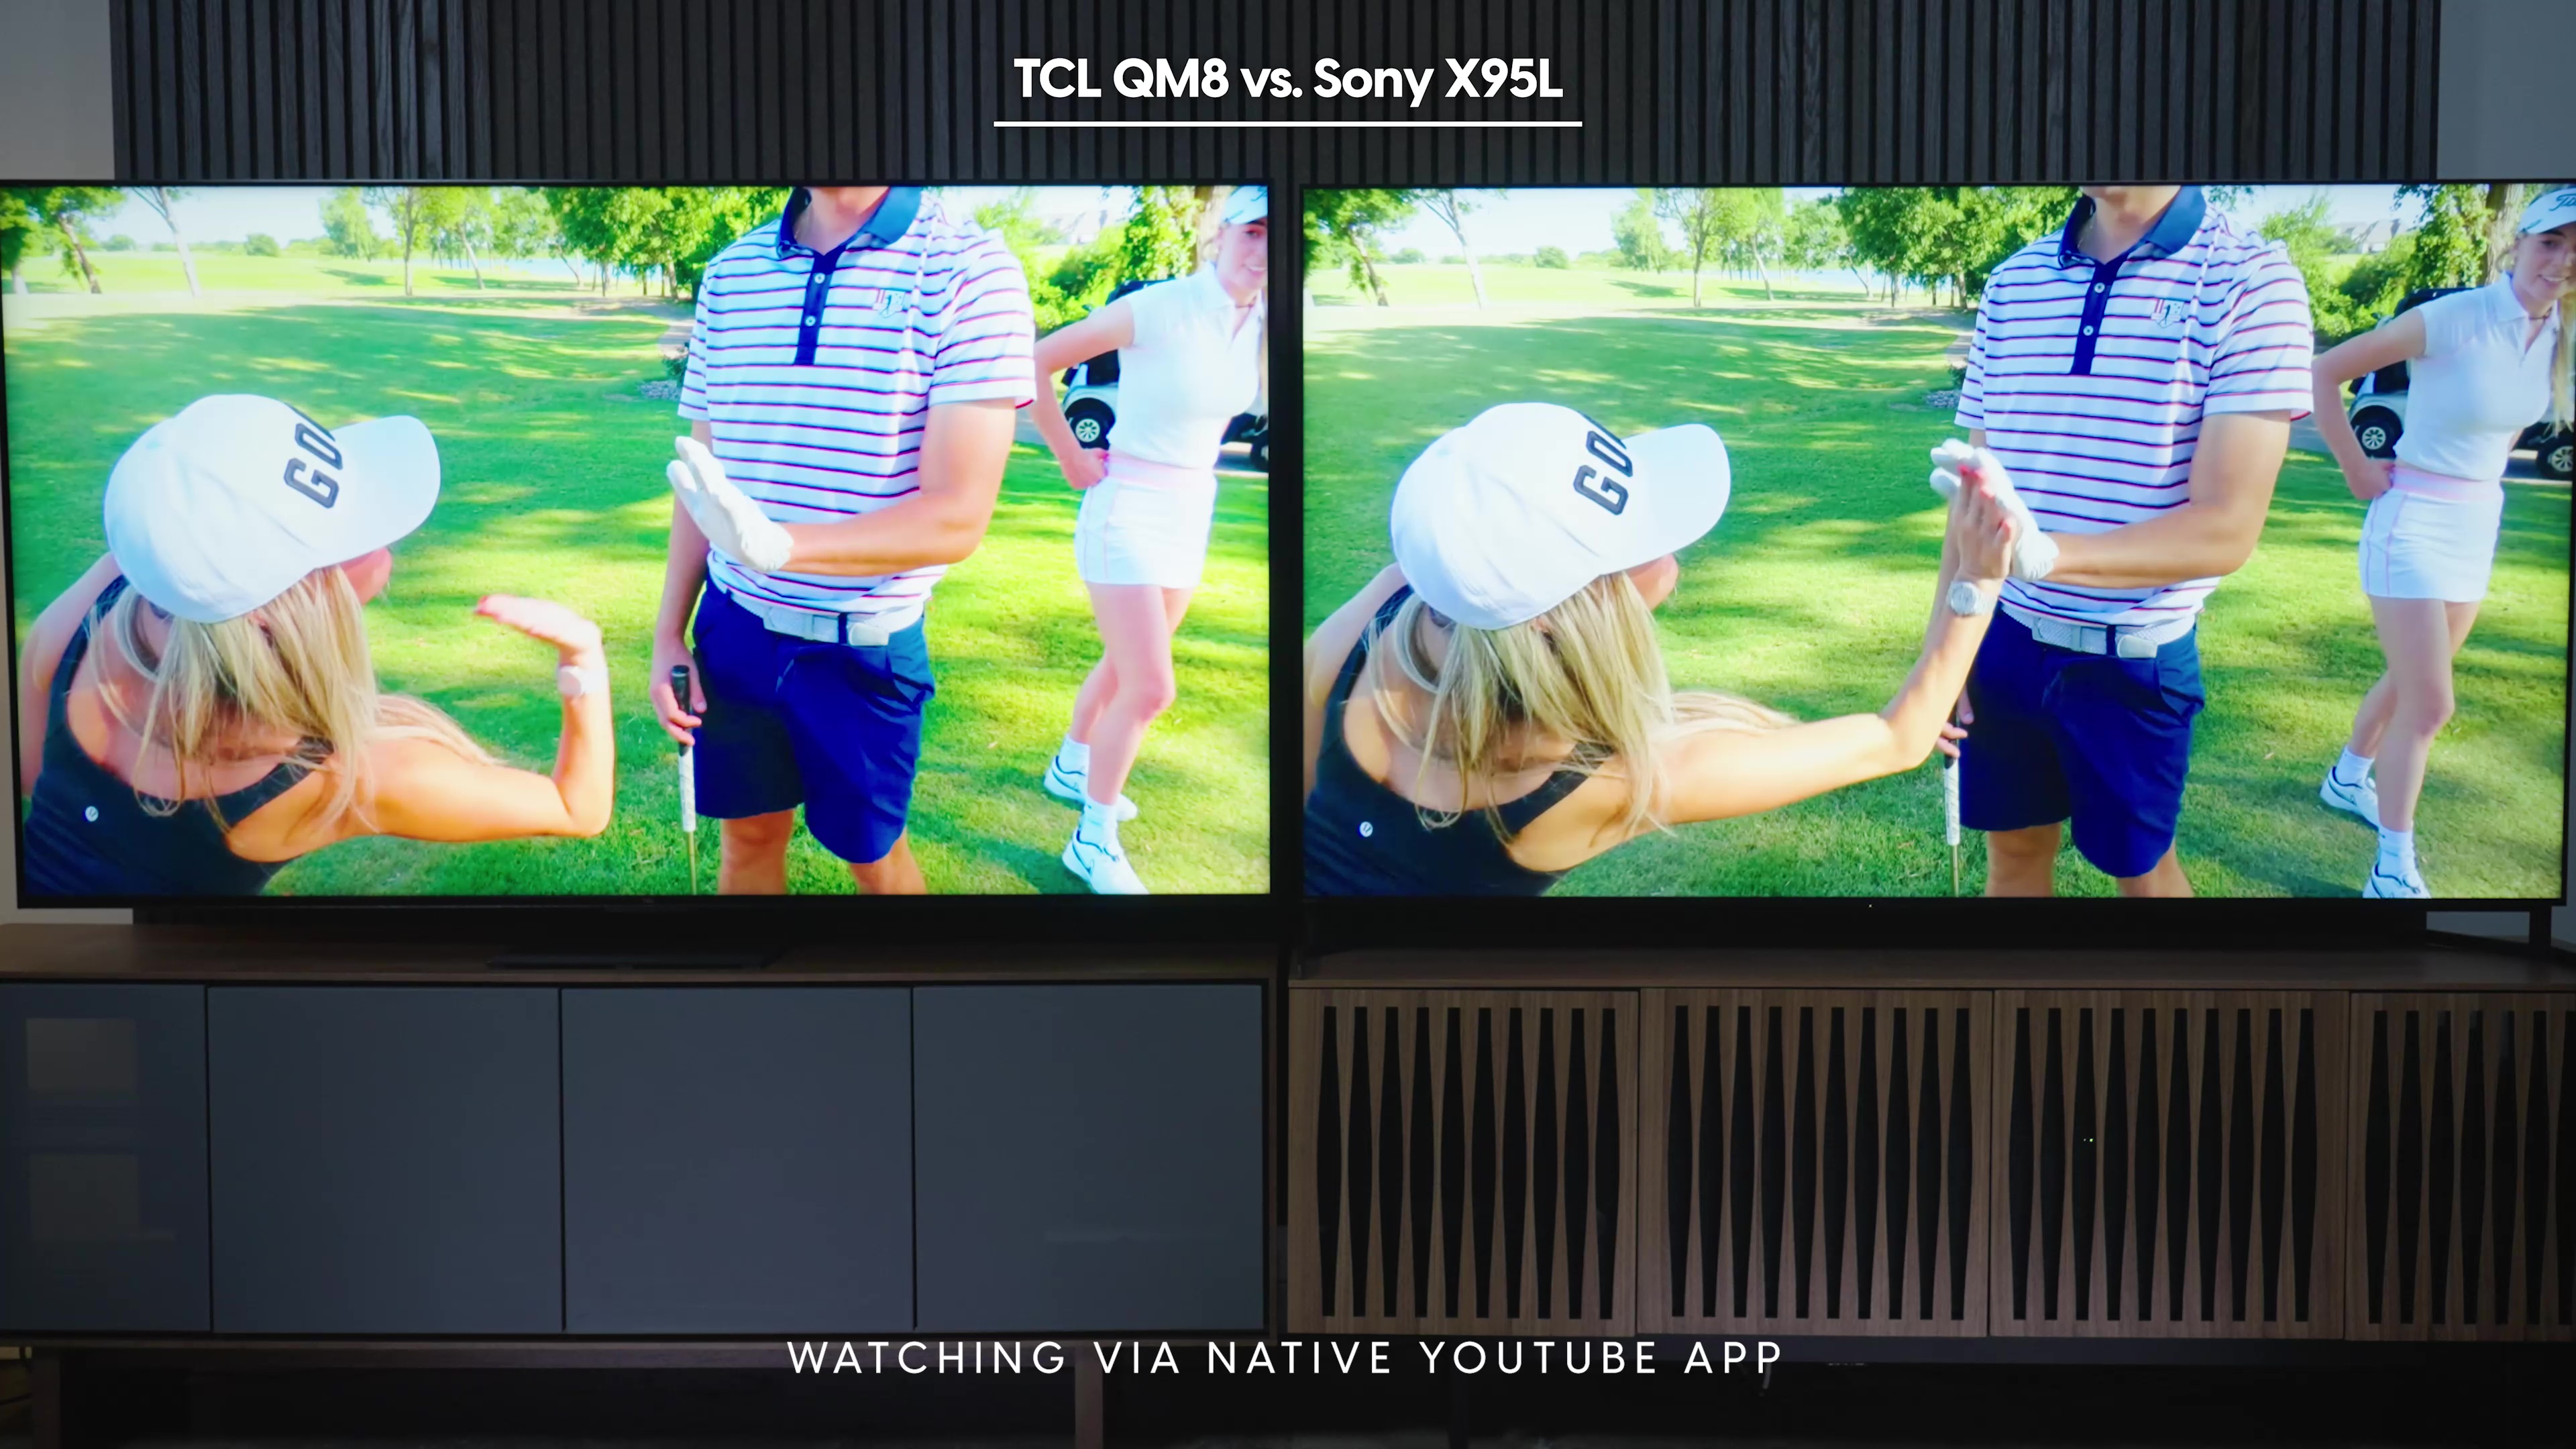 Comparación lado a lado de una captura de pantalla del canal Good Good Golf en la aplicación nativa de YouTube en Sony Bravia X95L vs TCL QM8.